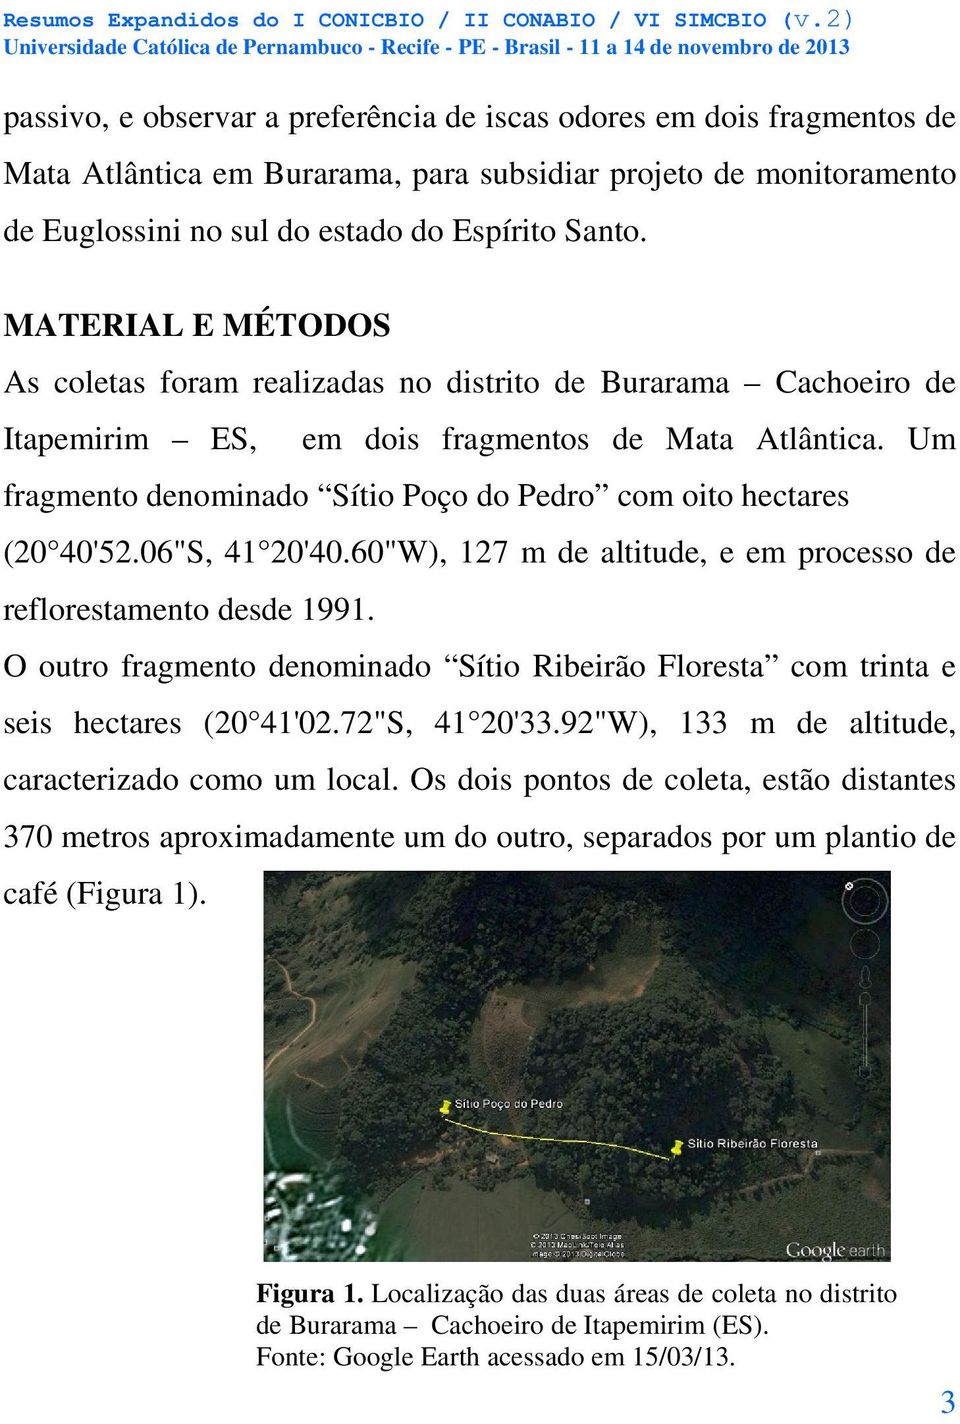 Um fragmento denominado Sítio Poço do Pedro com oito hectares (20 40'52.06"S, 41 20'40.60"W), 127 m de altitude, e em processo de reflorestamento desde 1991.